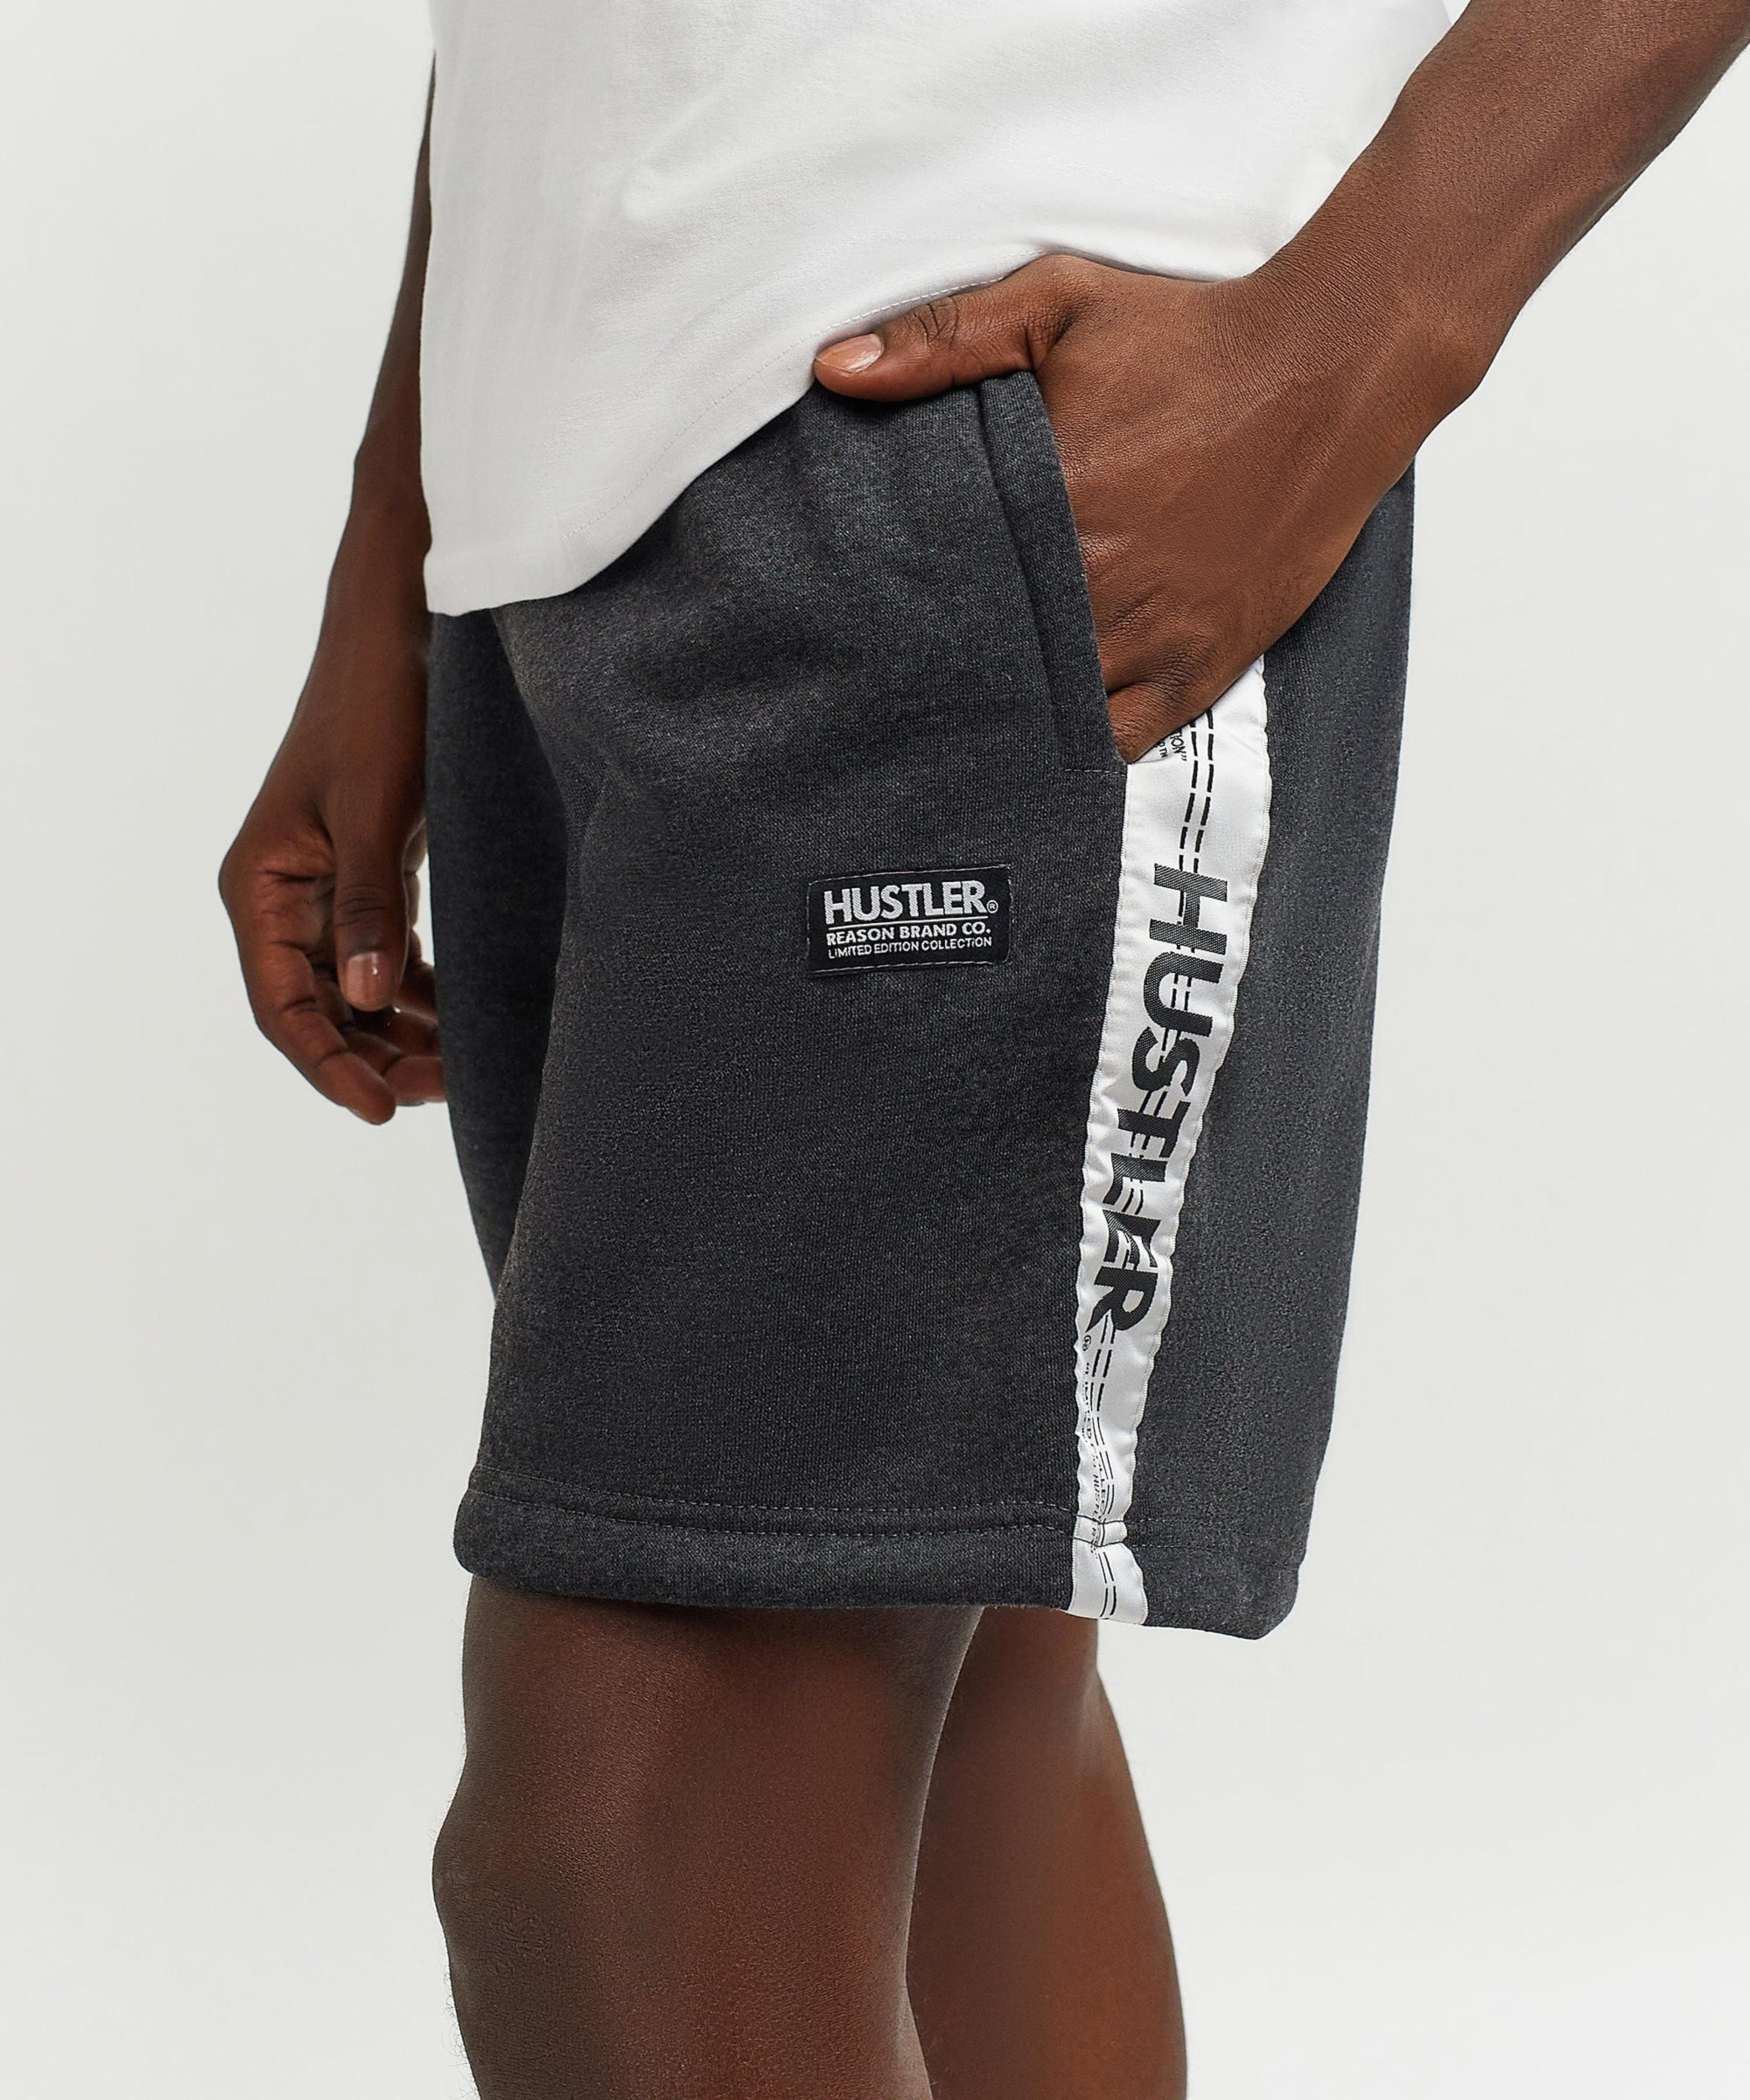 Hustler Side Stripe Shorts - Charcoal